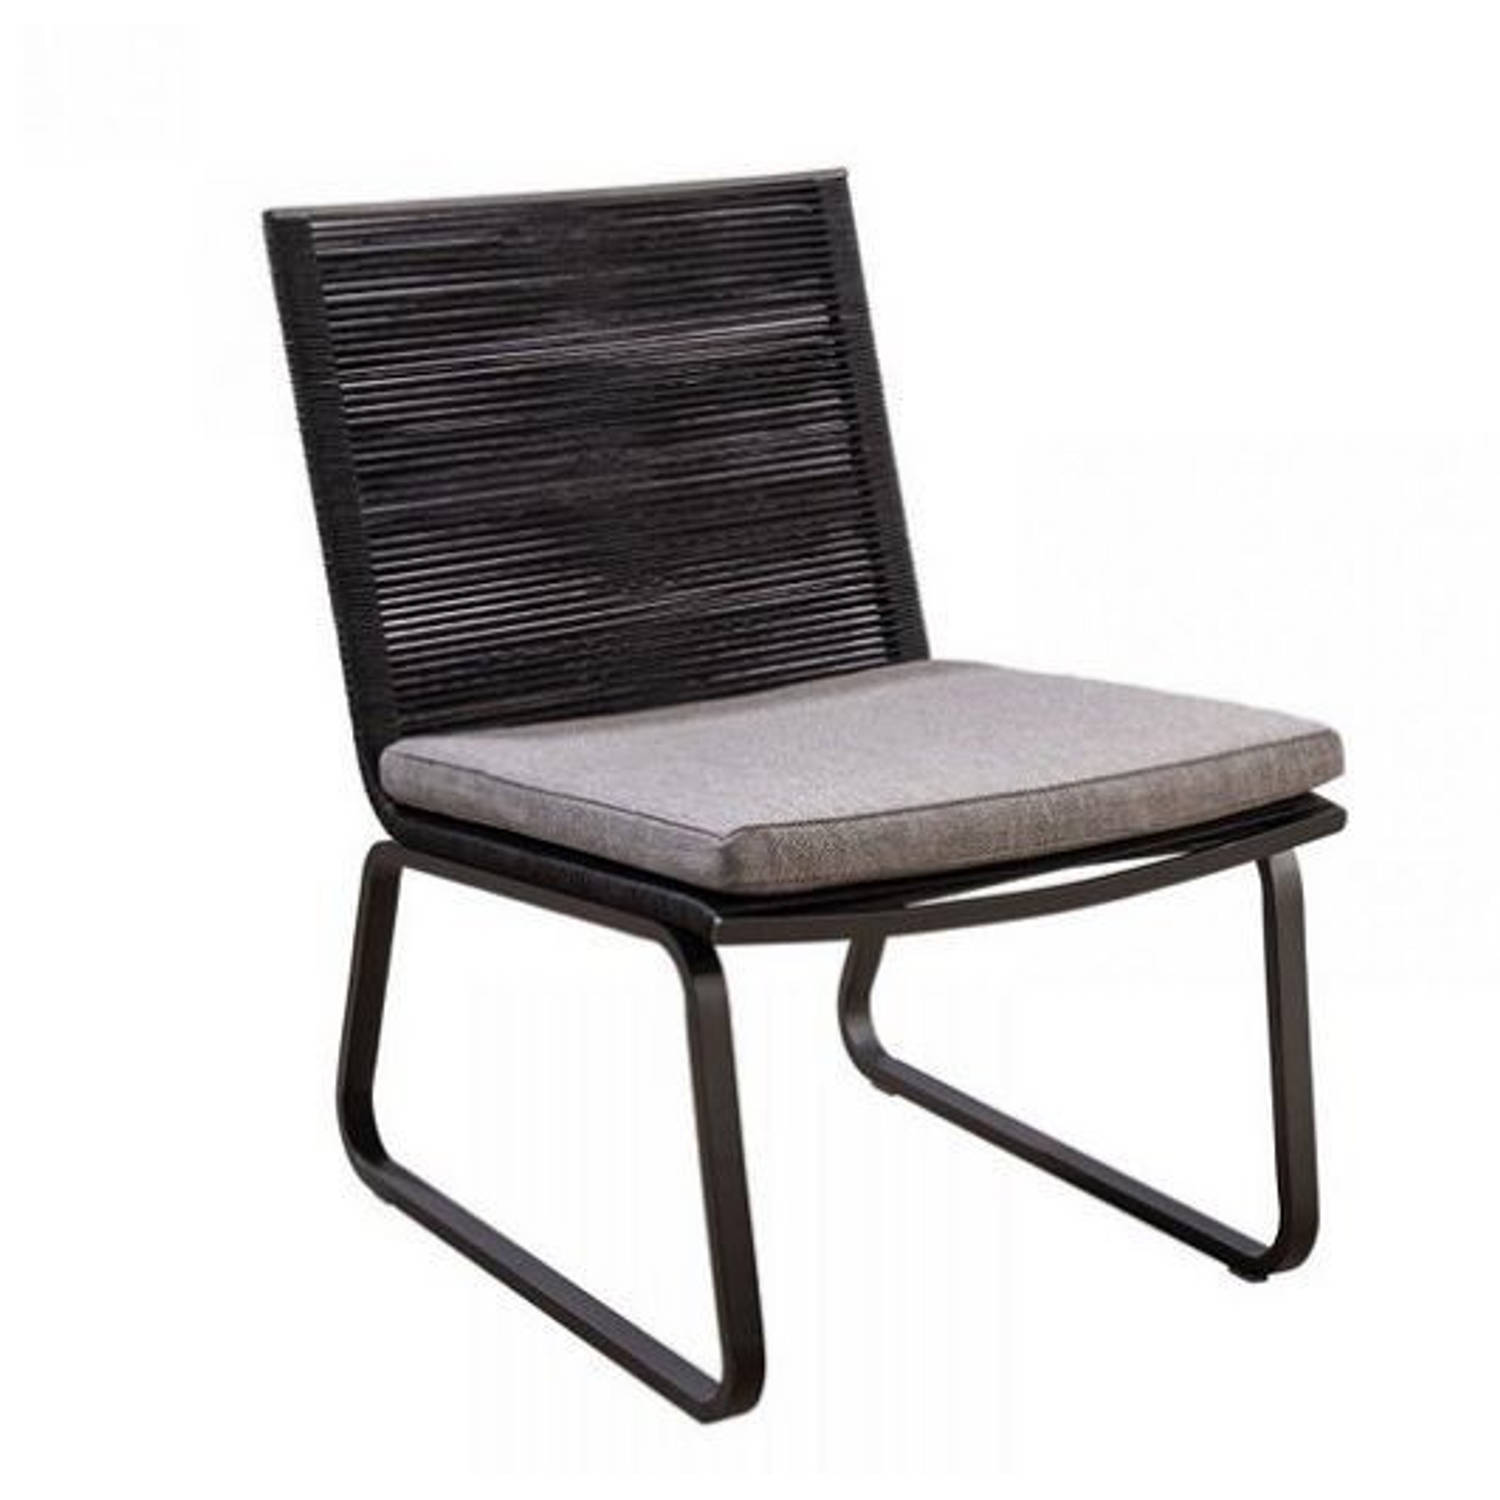 Yoi - Kome lounge chair alu black/rope black/soil